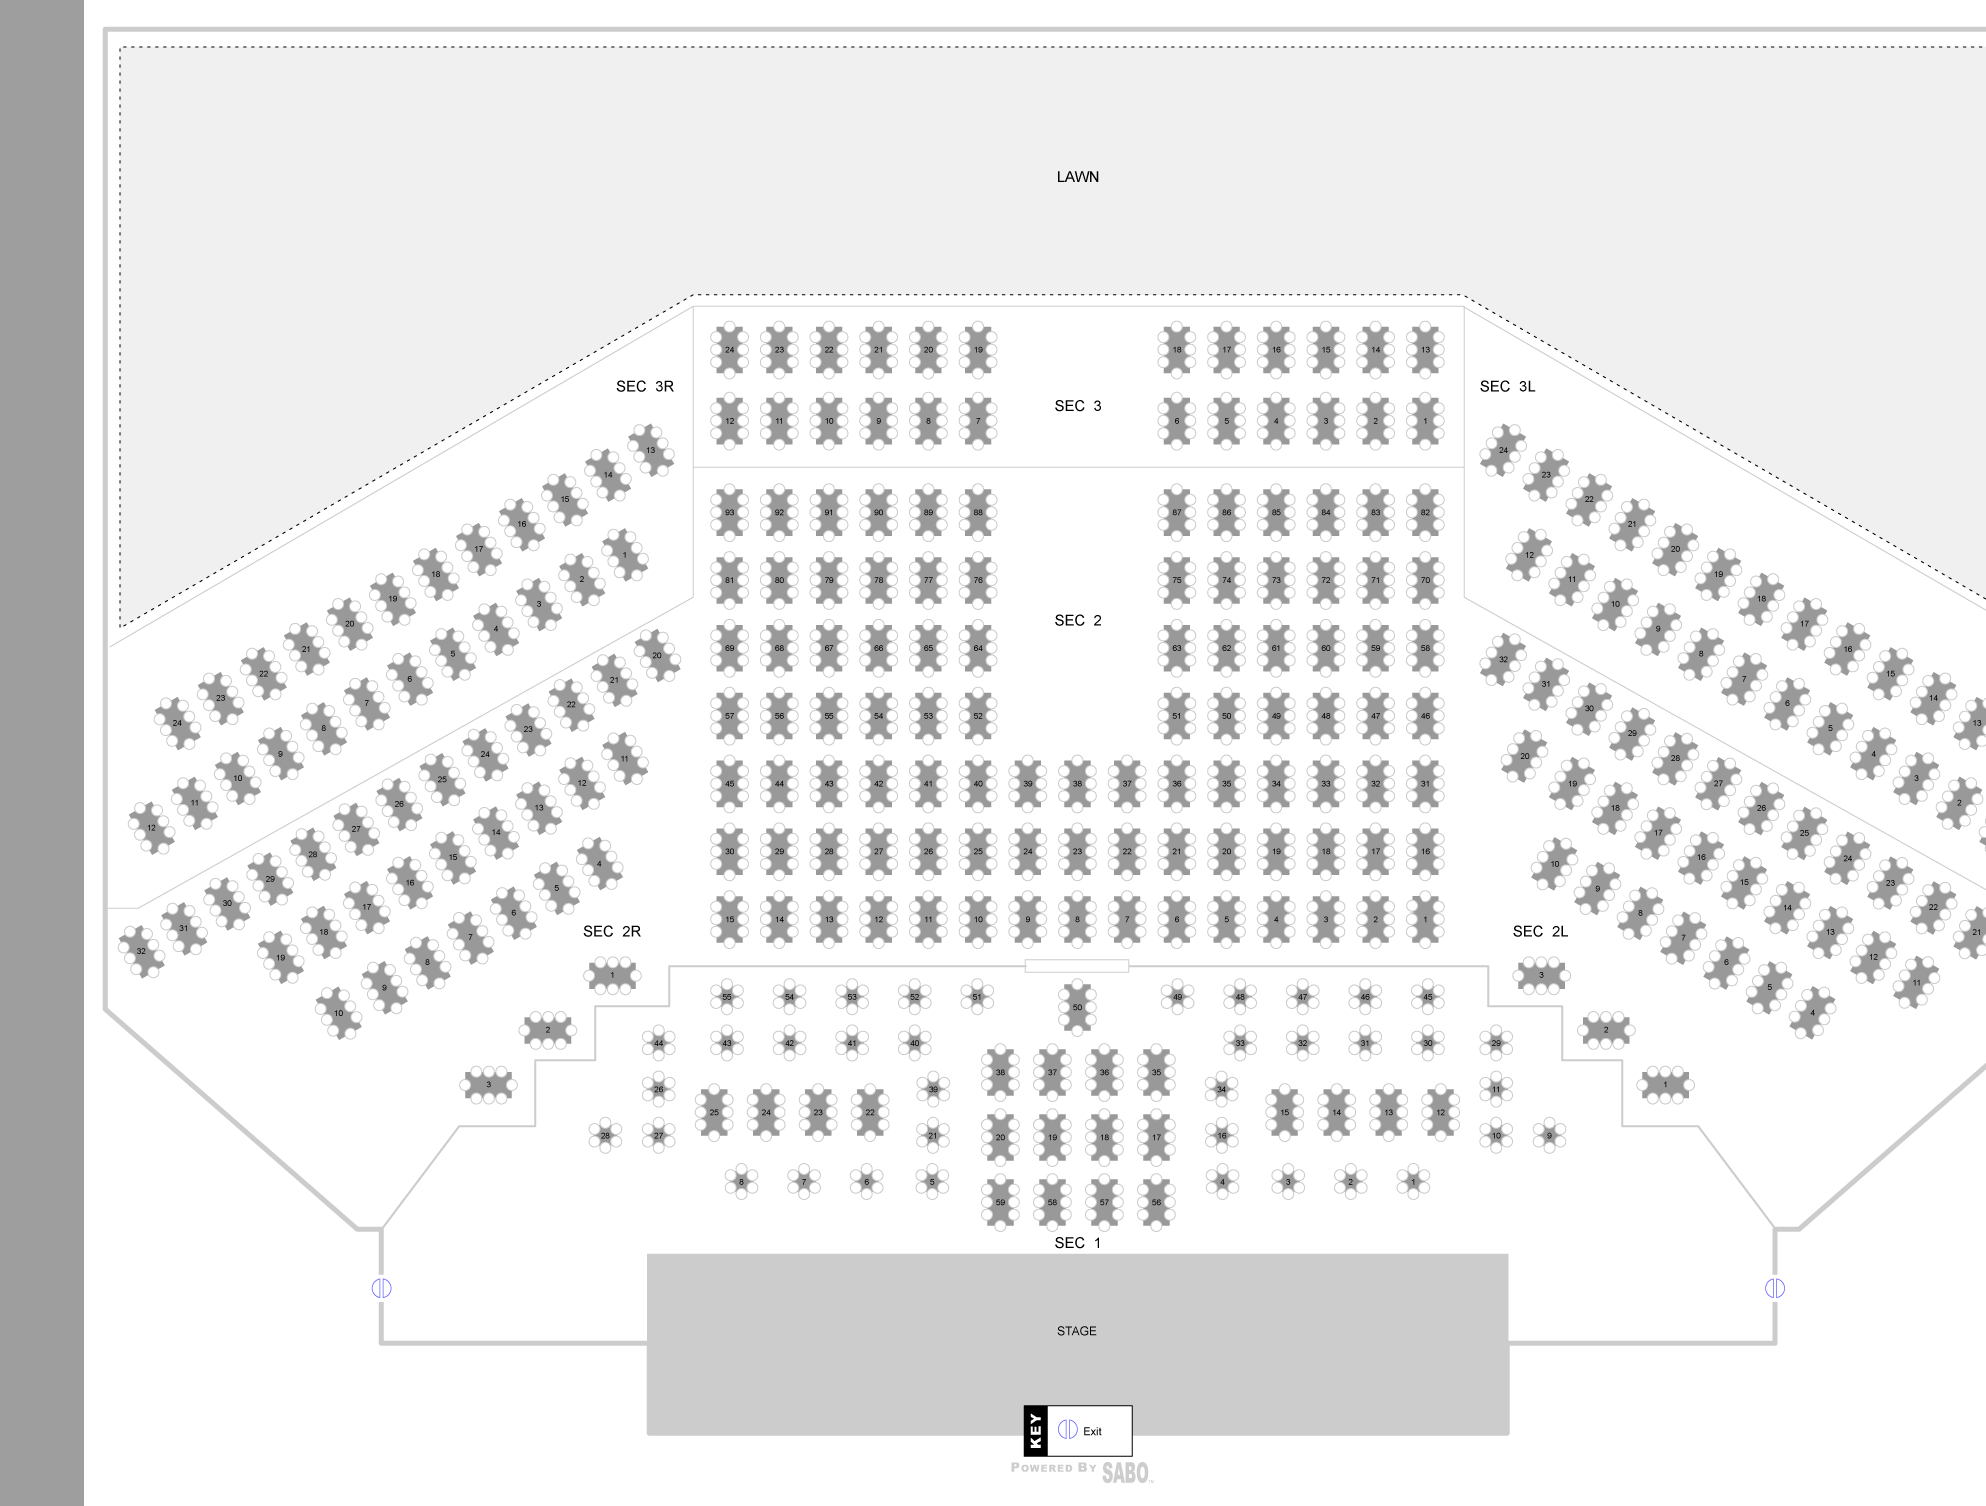 Spartanburg Memorial Auditorium Seating Chart